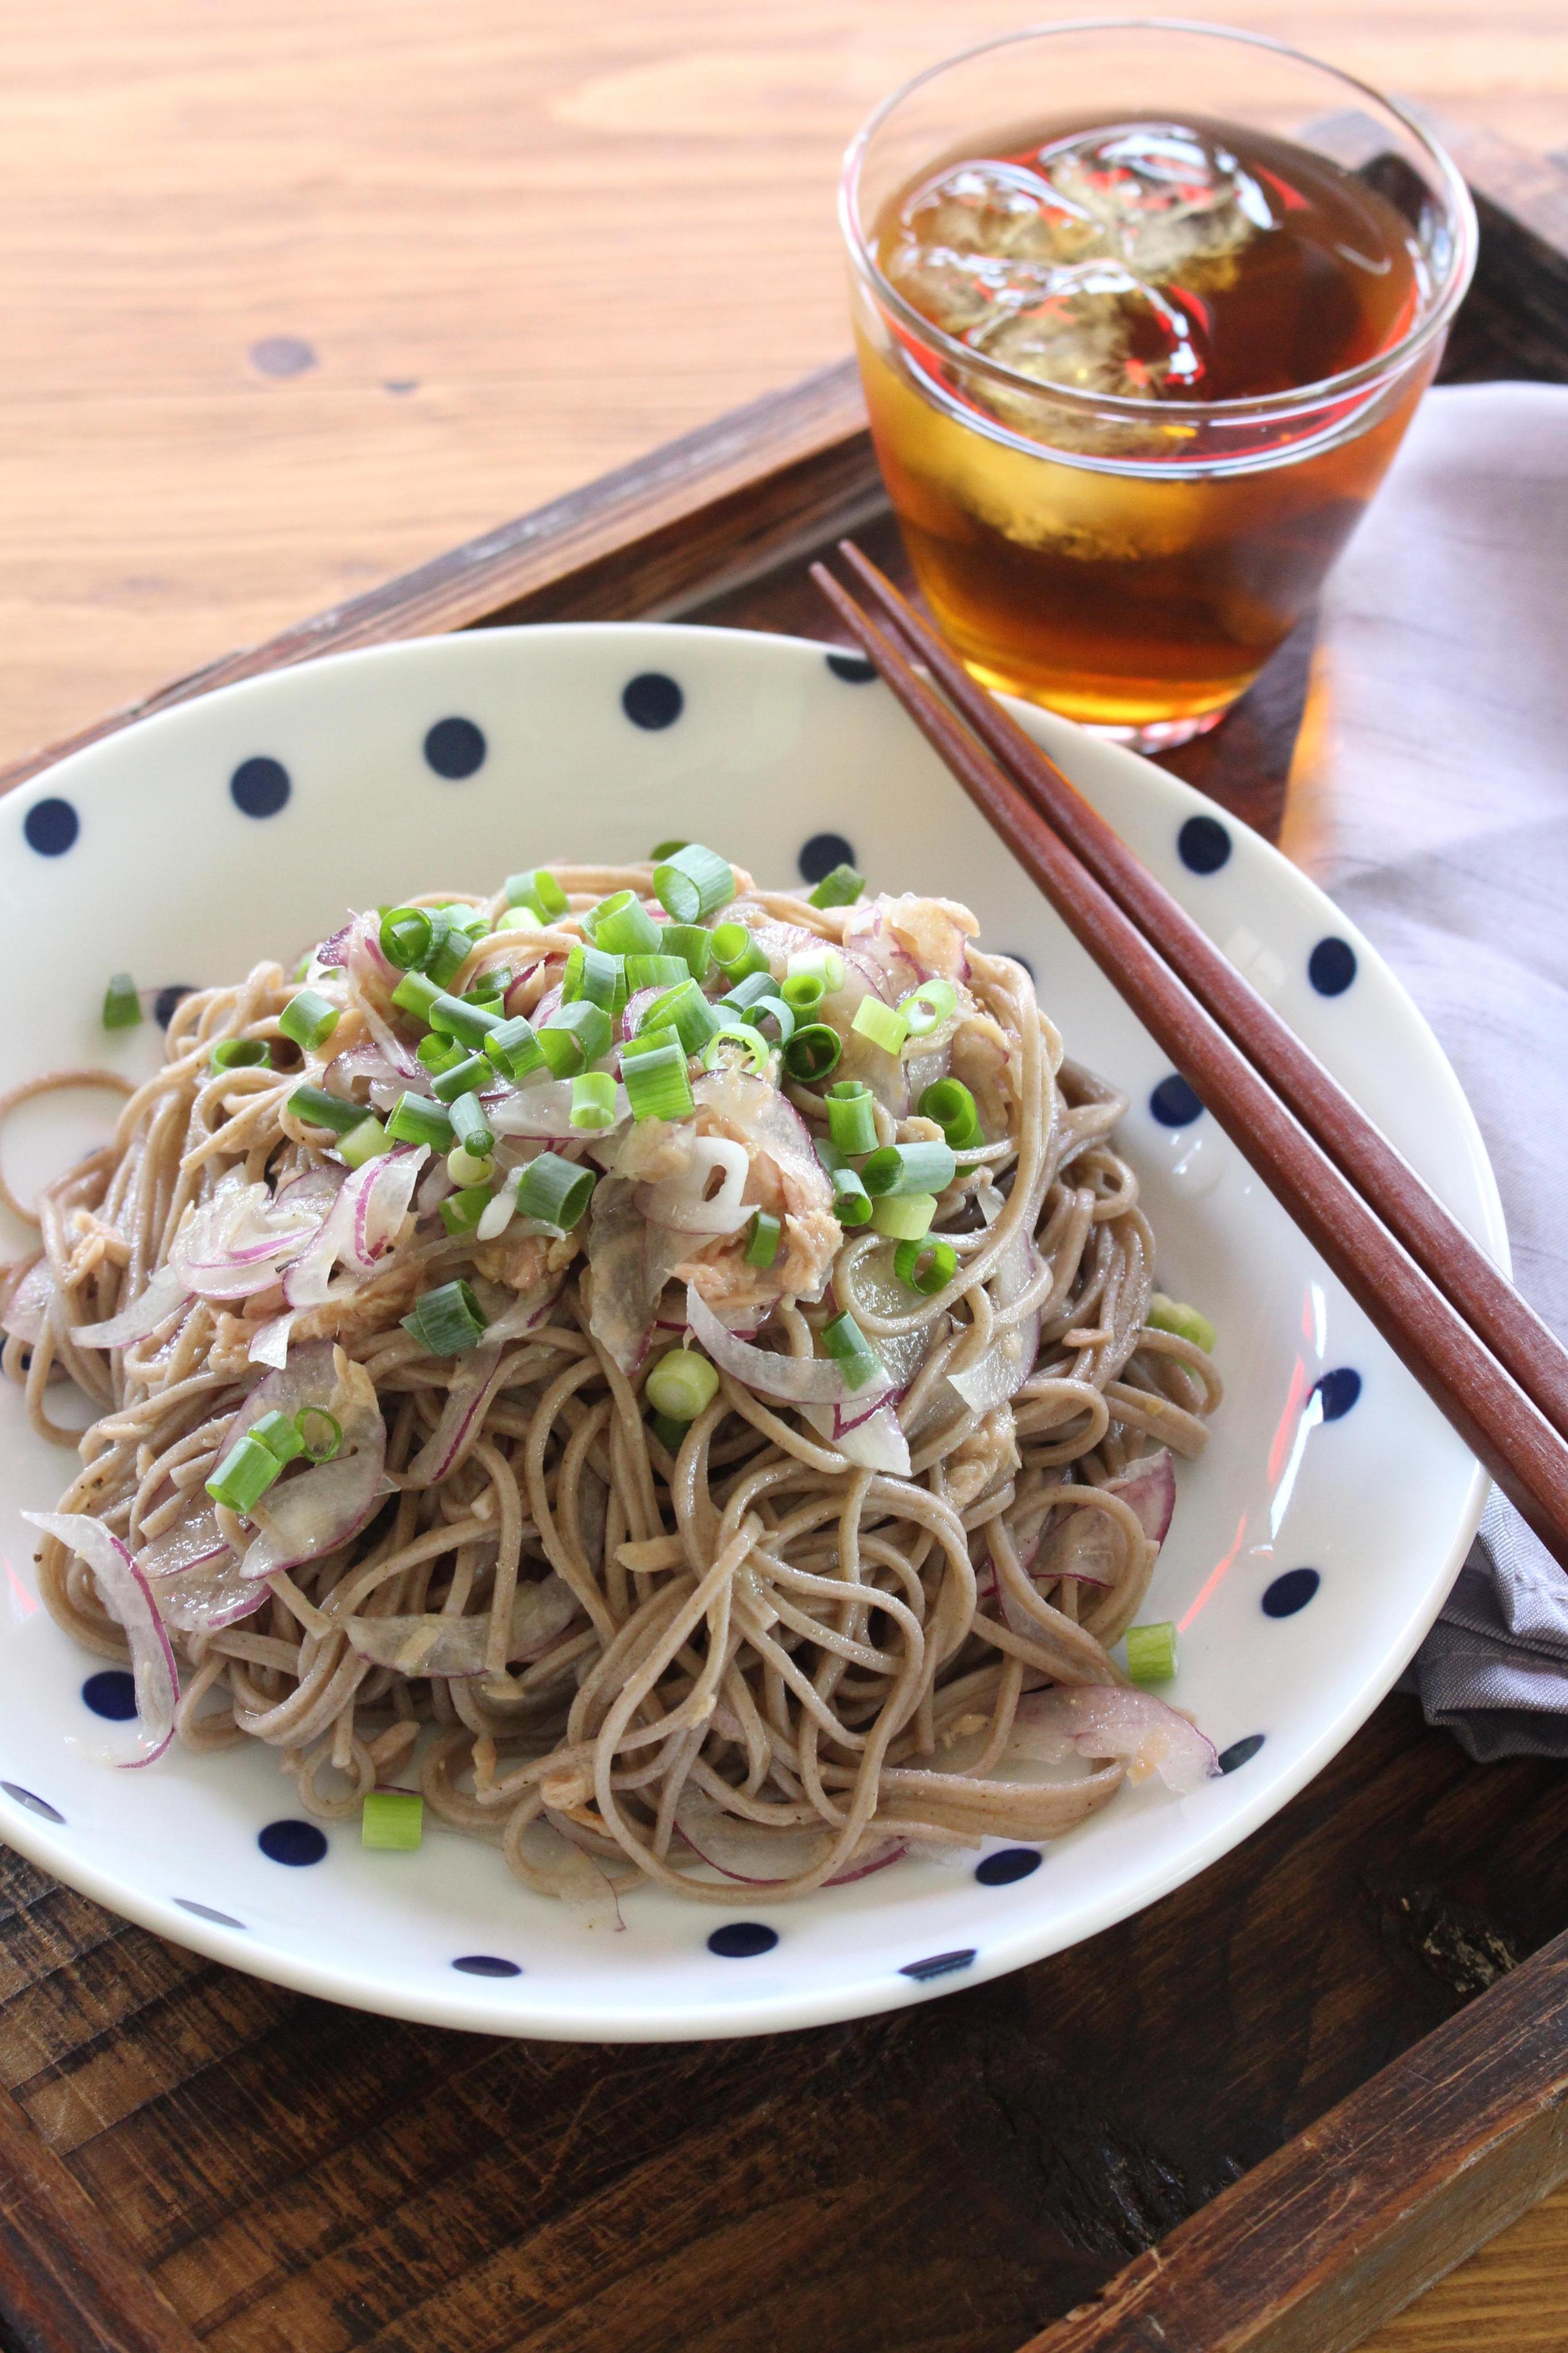 ツナと玉ねぎの冷やし蕎麦のレシピ 作り方 貞本 紘子 料理教室検索サイト クスパ